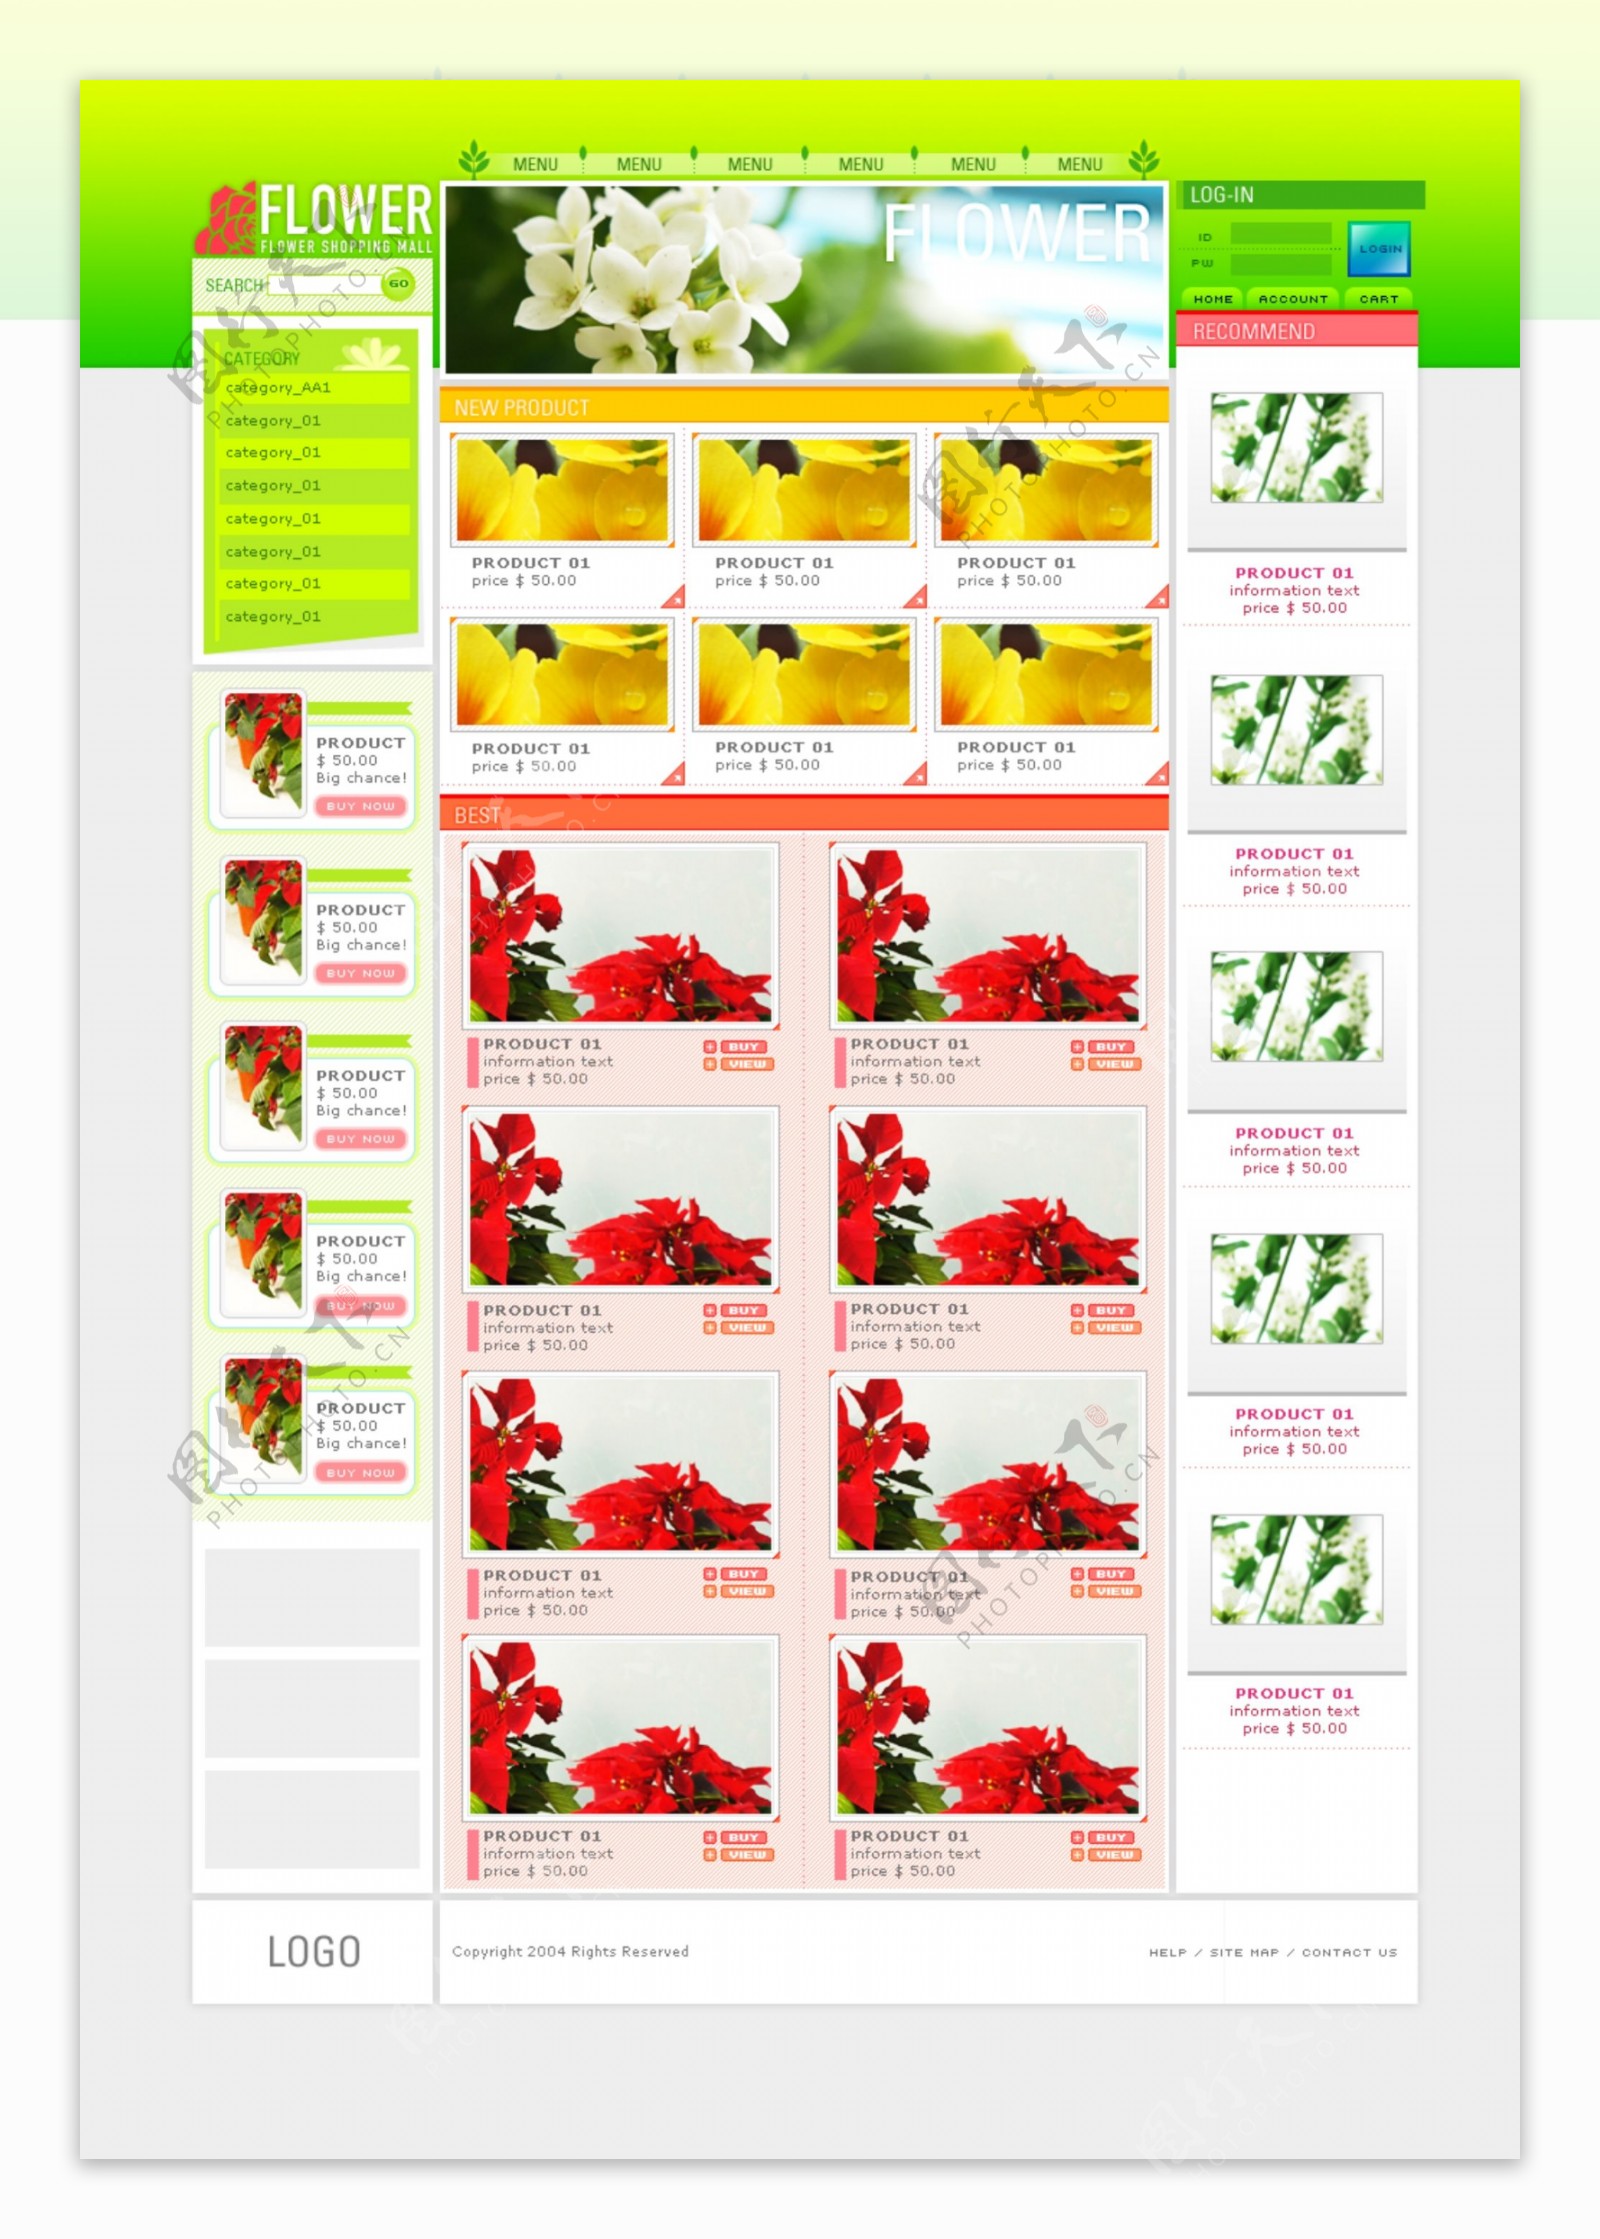 鲜花品种展示网页模板